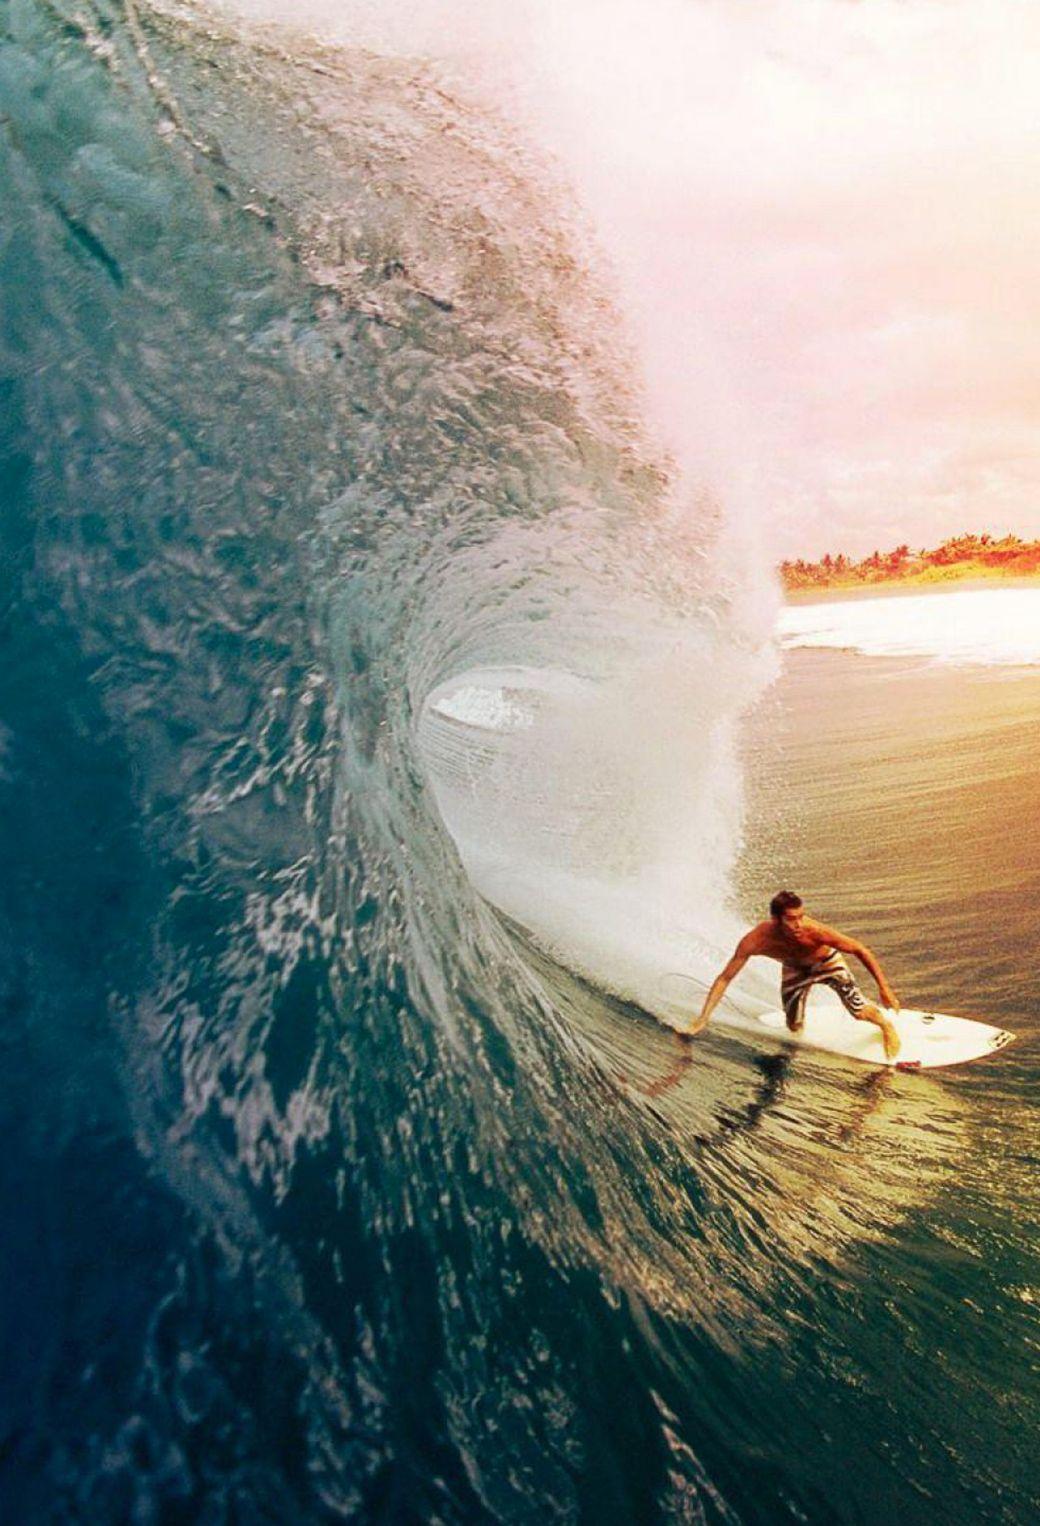 Surfing In Ocean IPhone Wallpaper  IPhone Wallpapers  iPhone Wallpapers